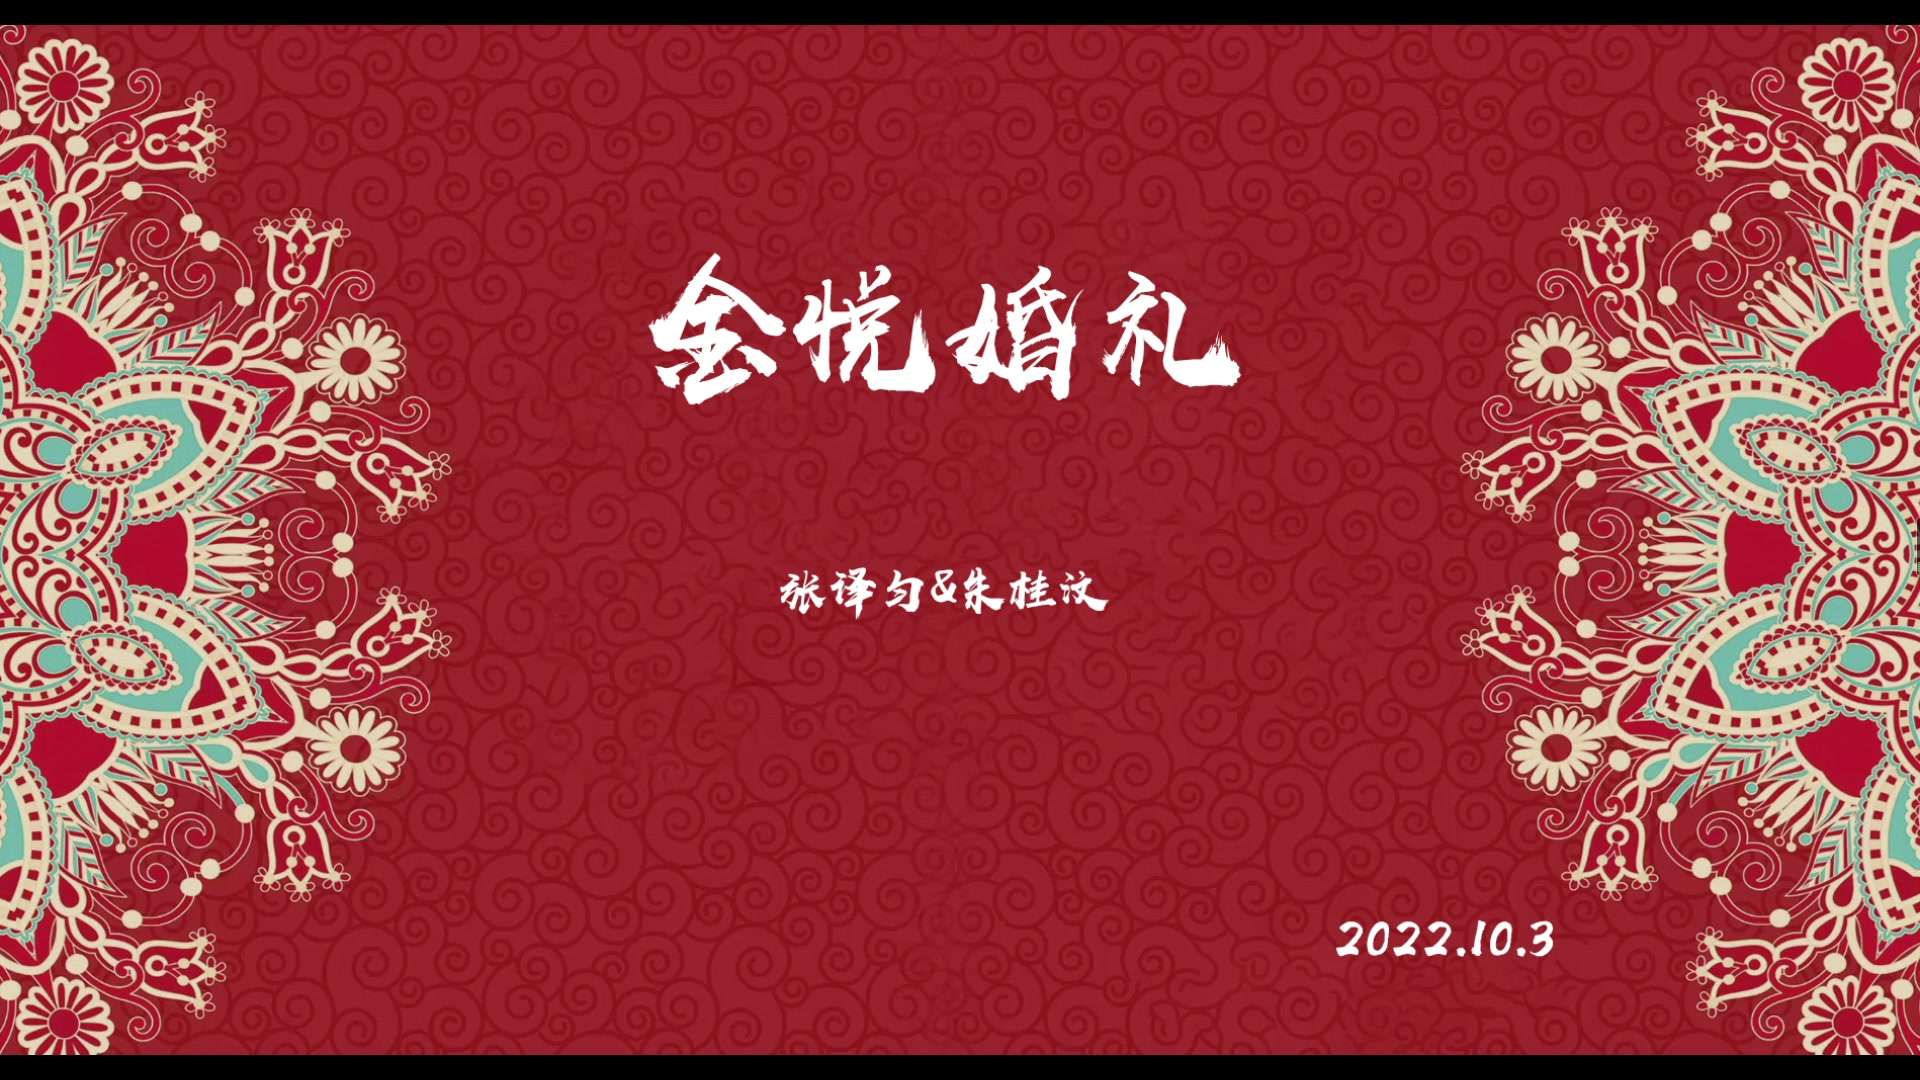 新片场/金悦婚礼/2022.10.3快剪/小林子婚拍